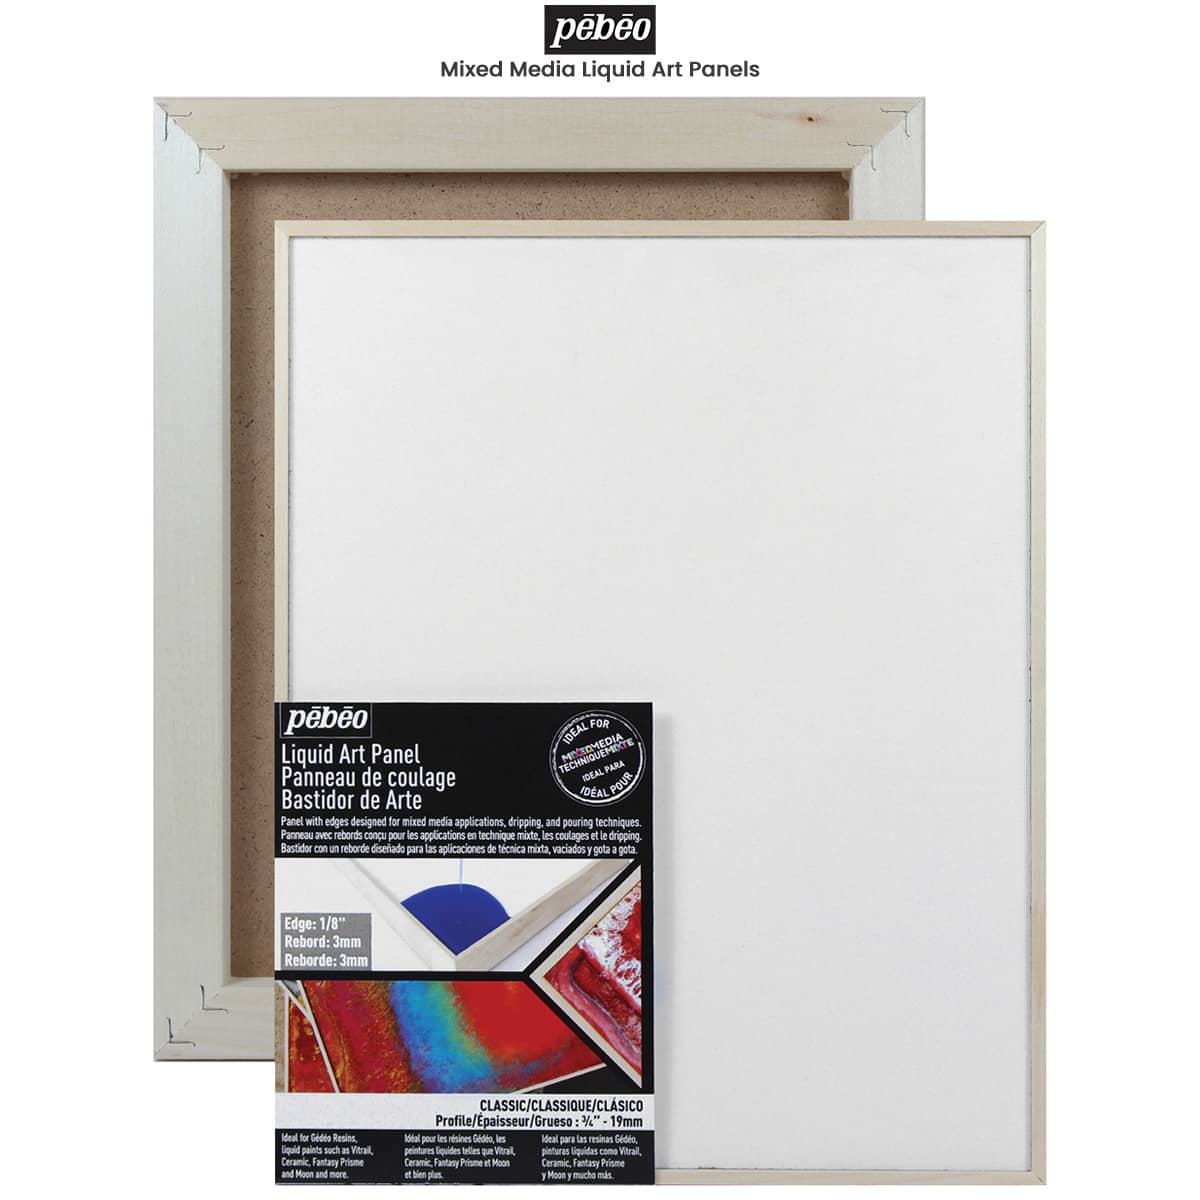 Canson XL Palette Paper Pad